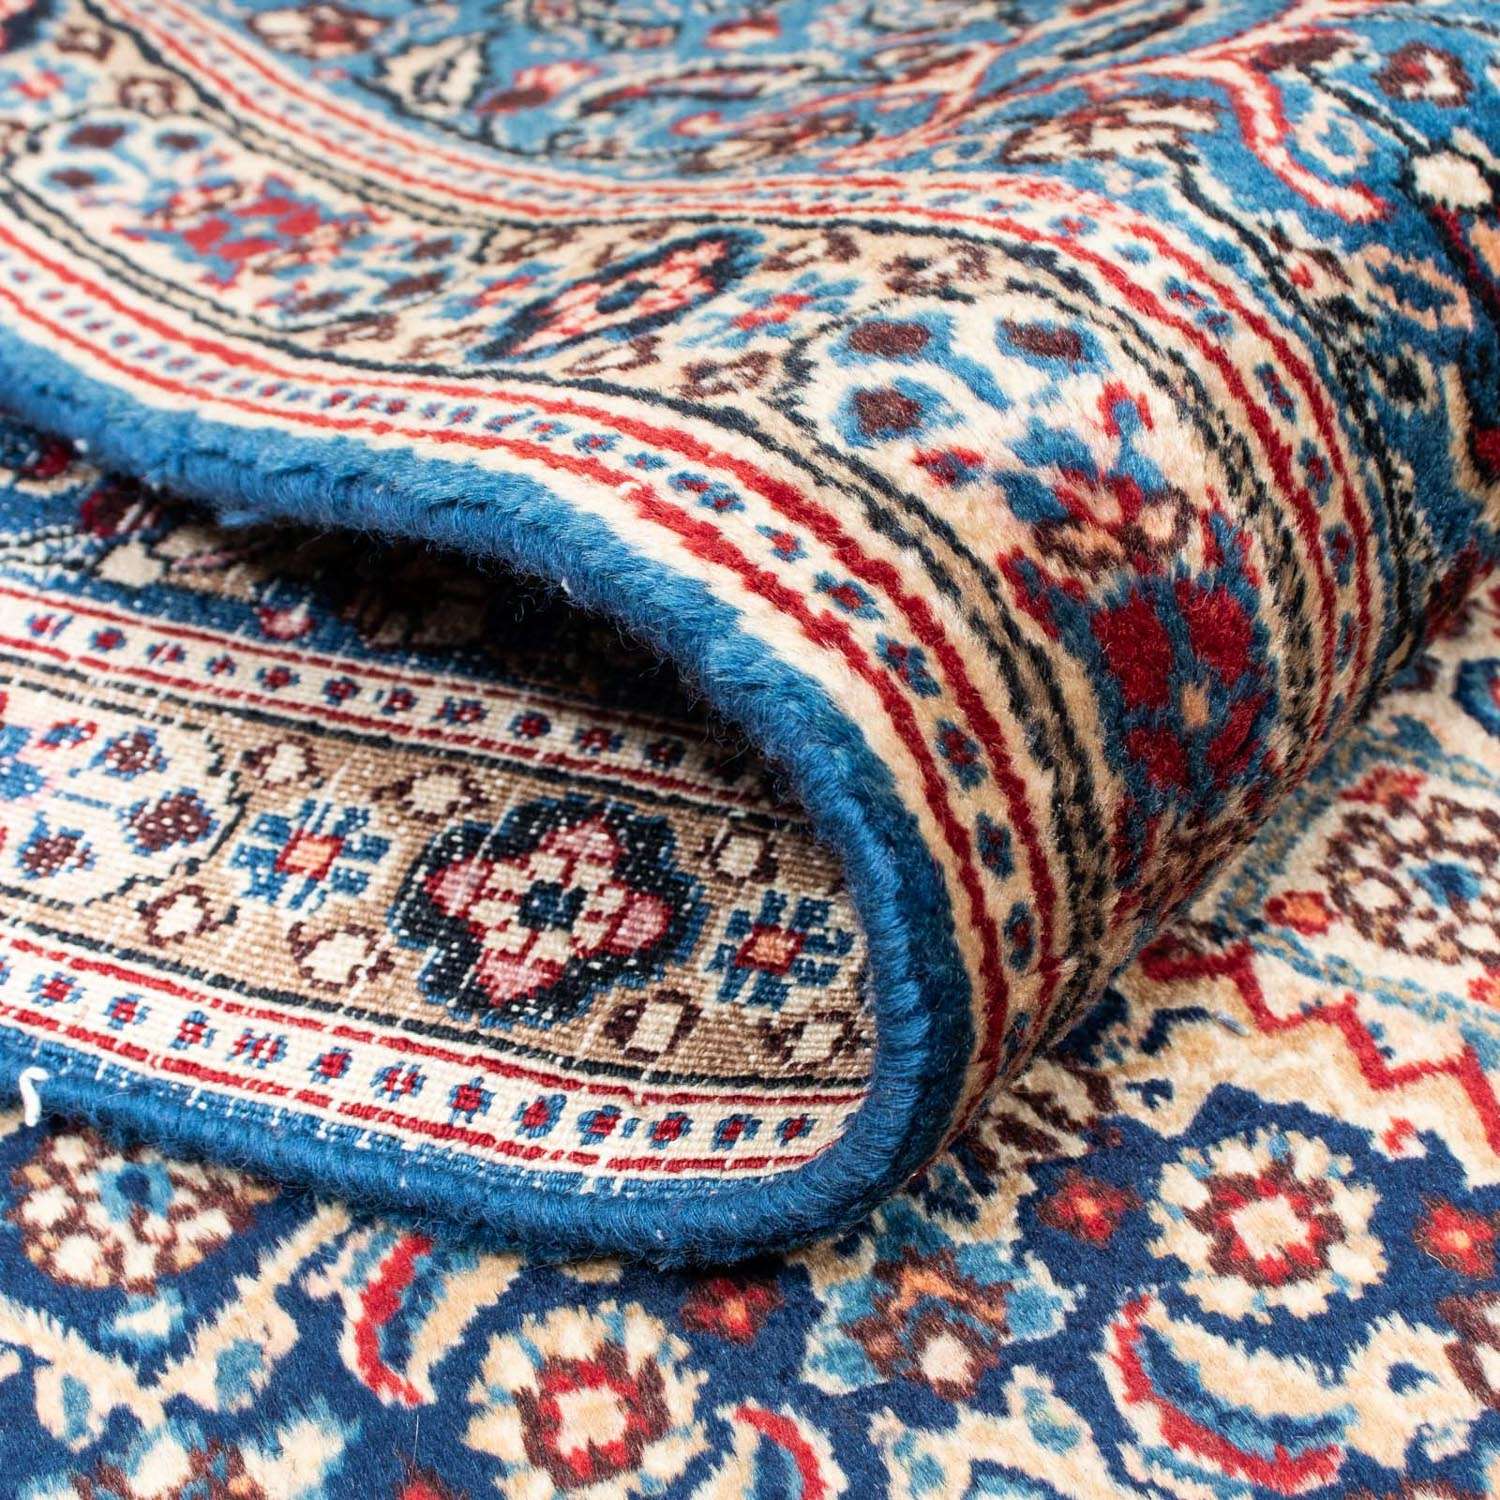 Perzisch tapijt - Klassiek - 305 x 208 cm - donkerblauw